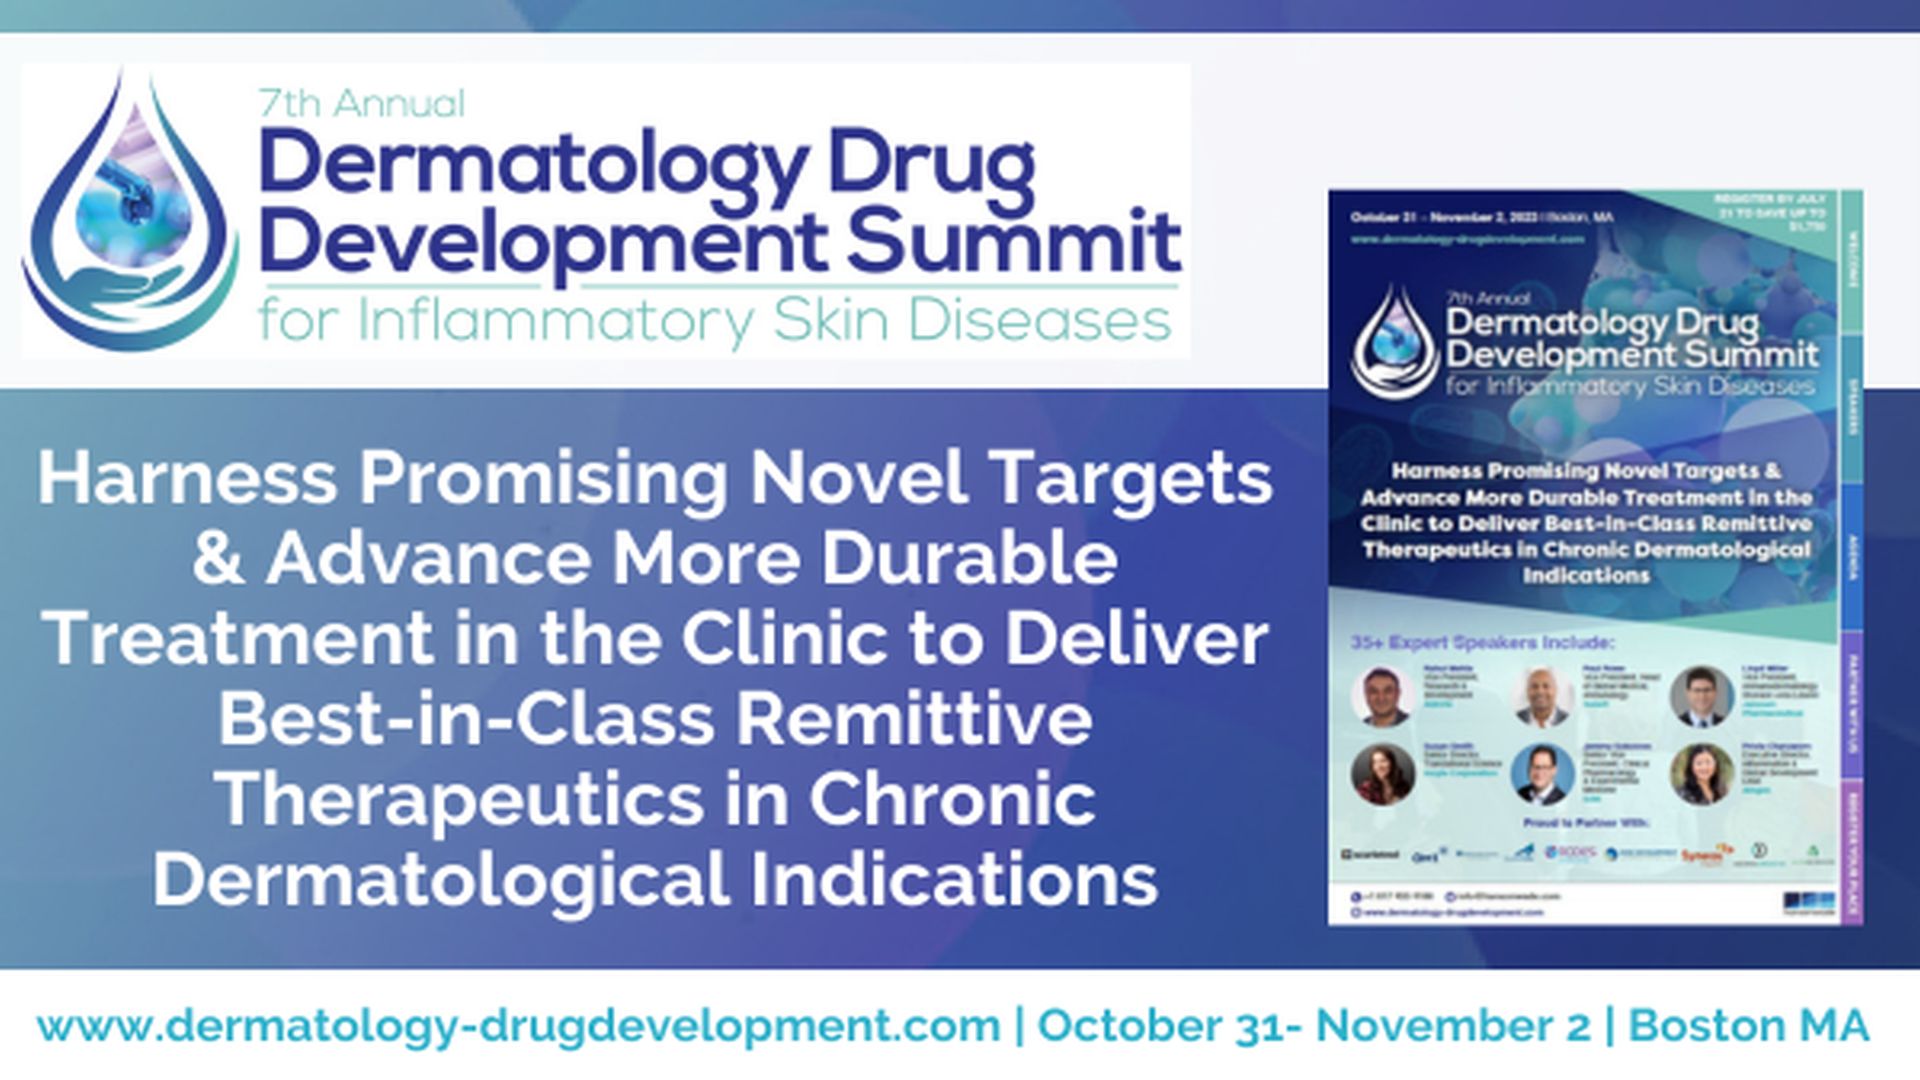 7th Dermatology Drug Development Summit